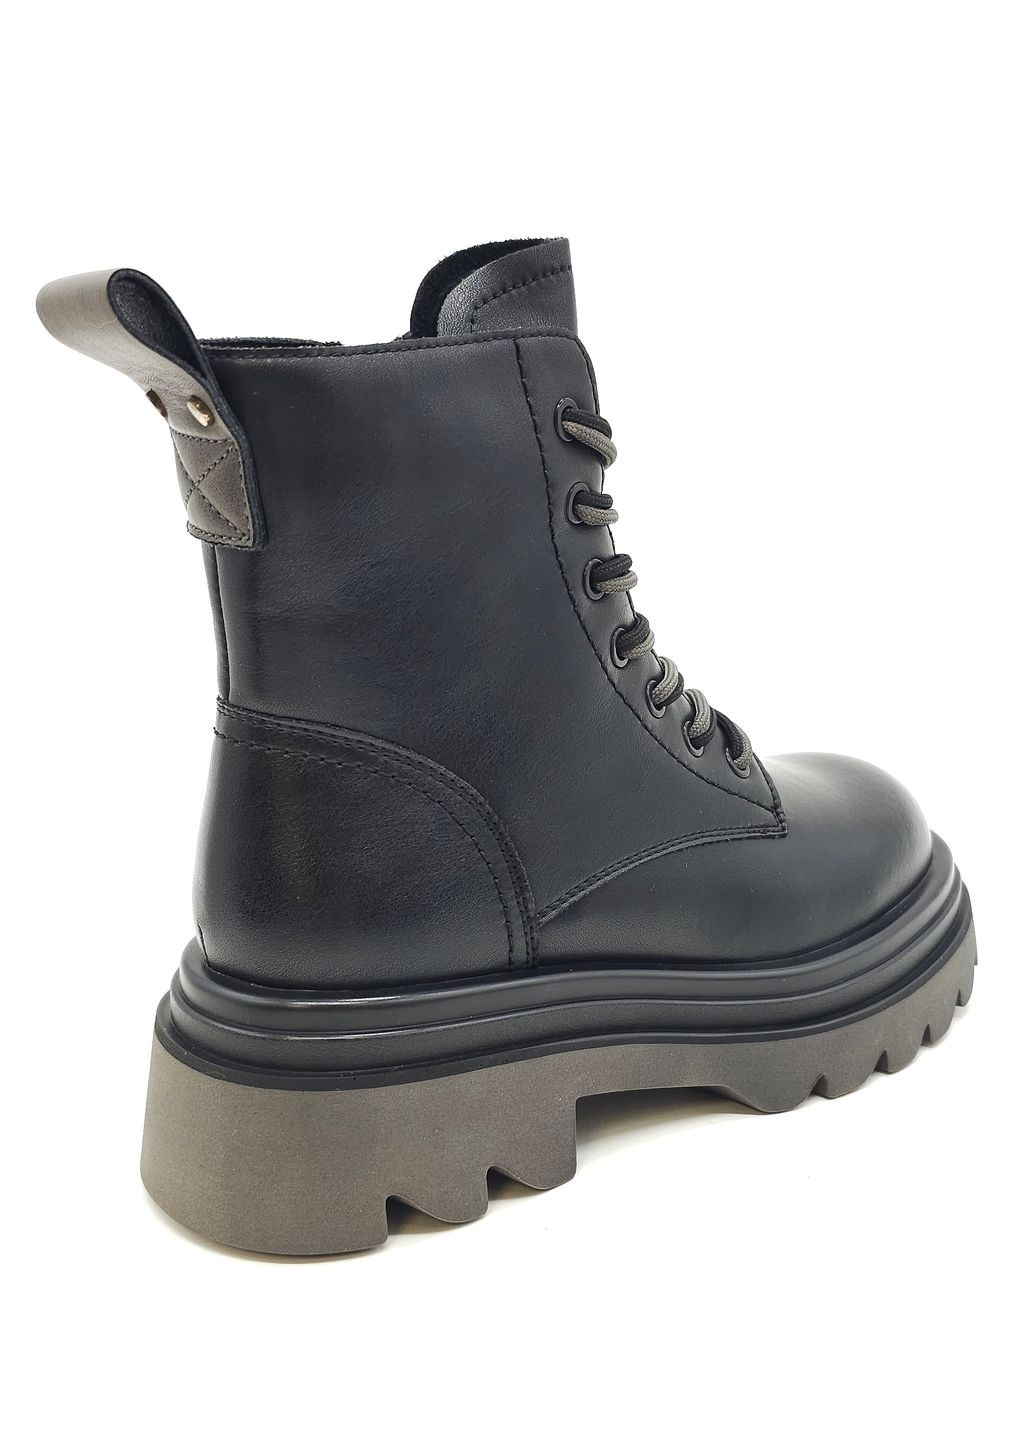 Осенние женские ботинки черные кожаные l-13-9 23 см (р) Lonza